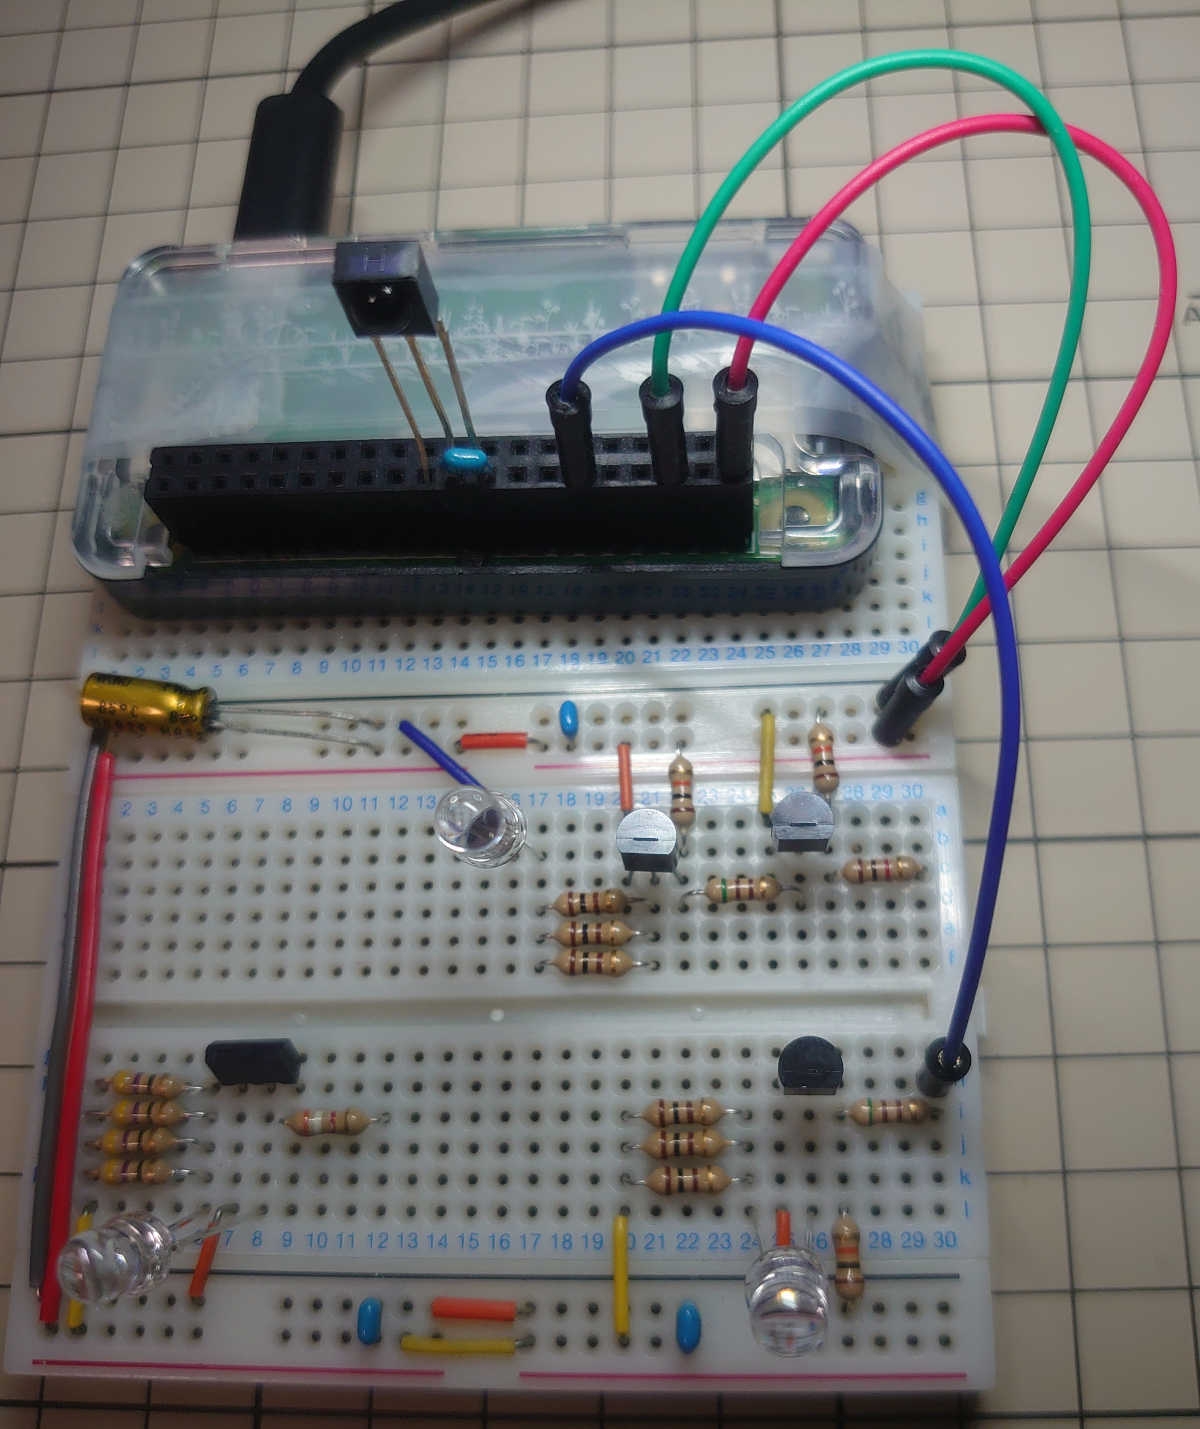 赤外線リモコン信号を記録して送信する学習リモコンをラズパイゼロでつくる。 cover image